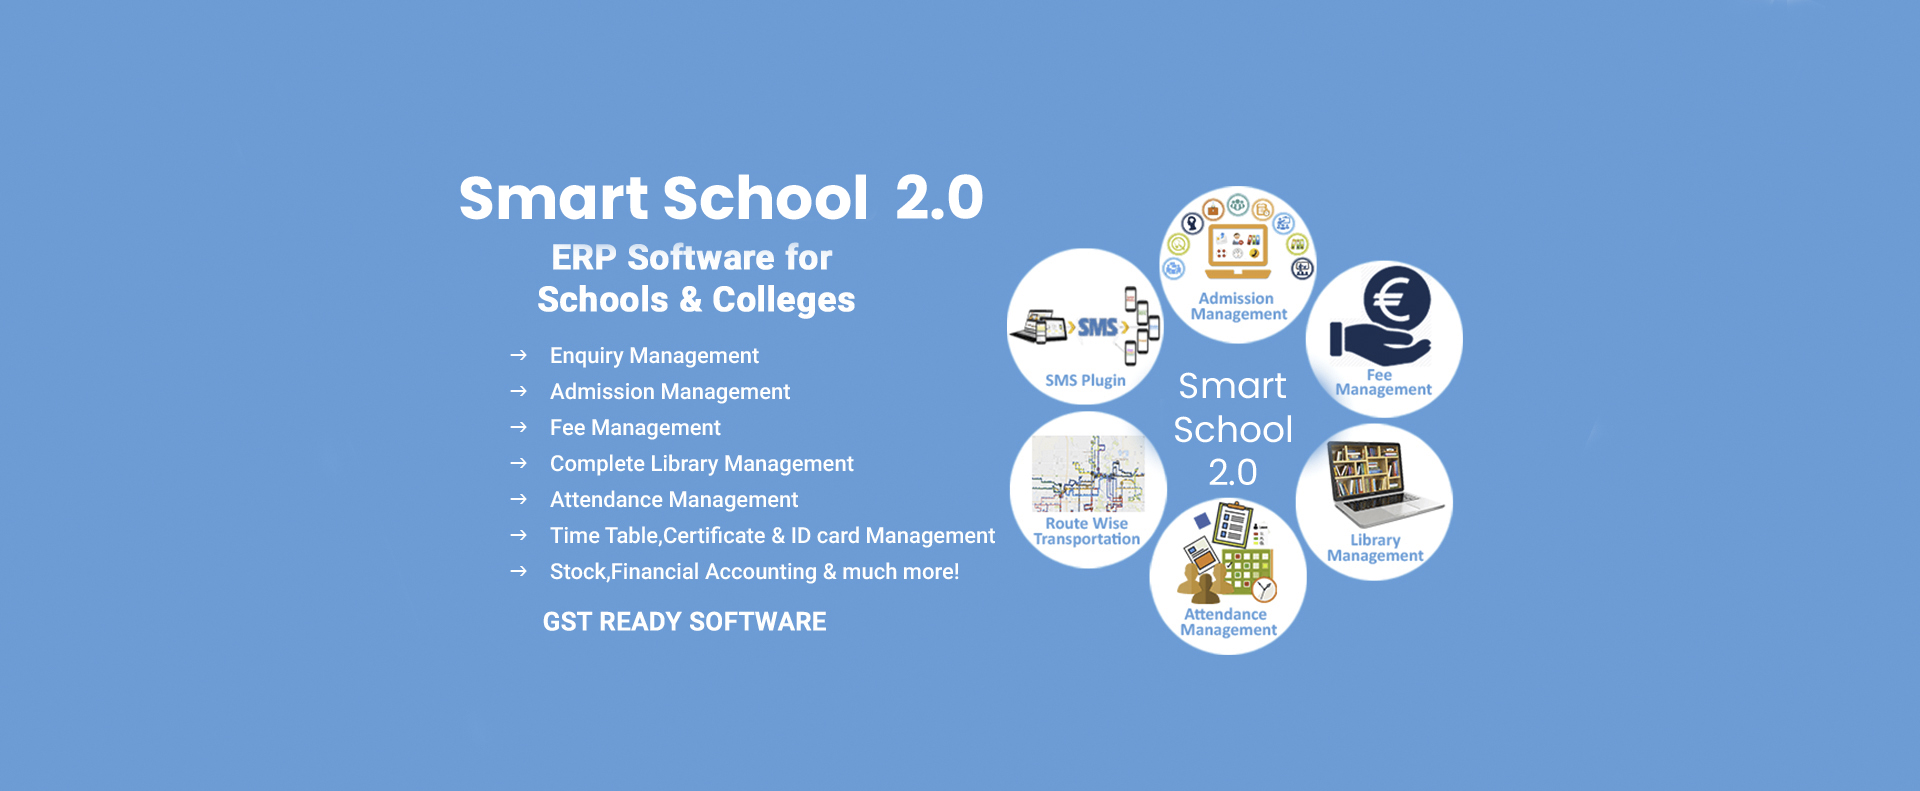 Smart School 2.0